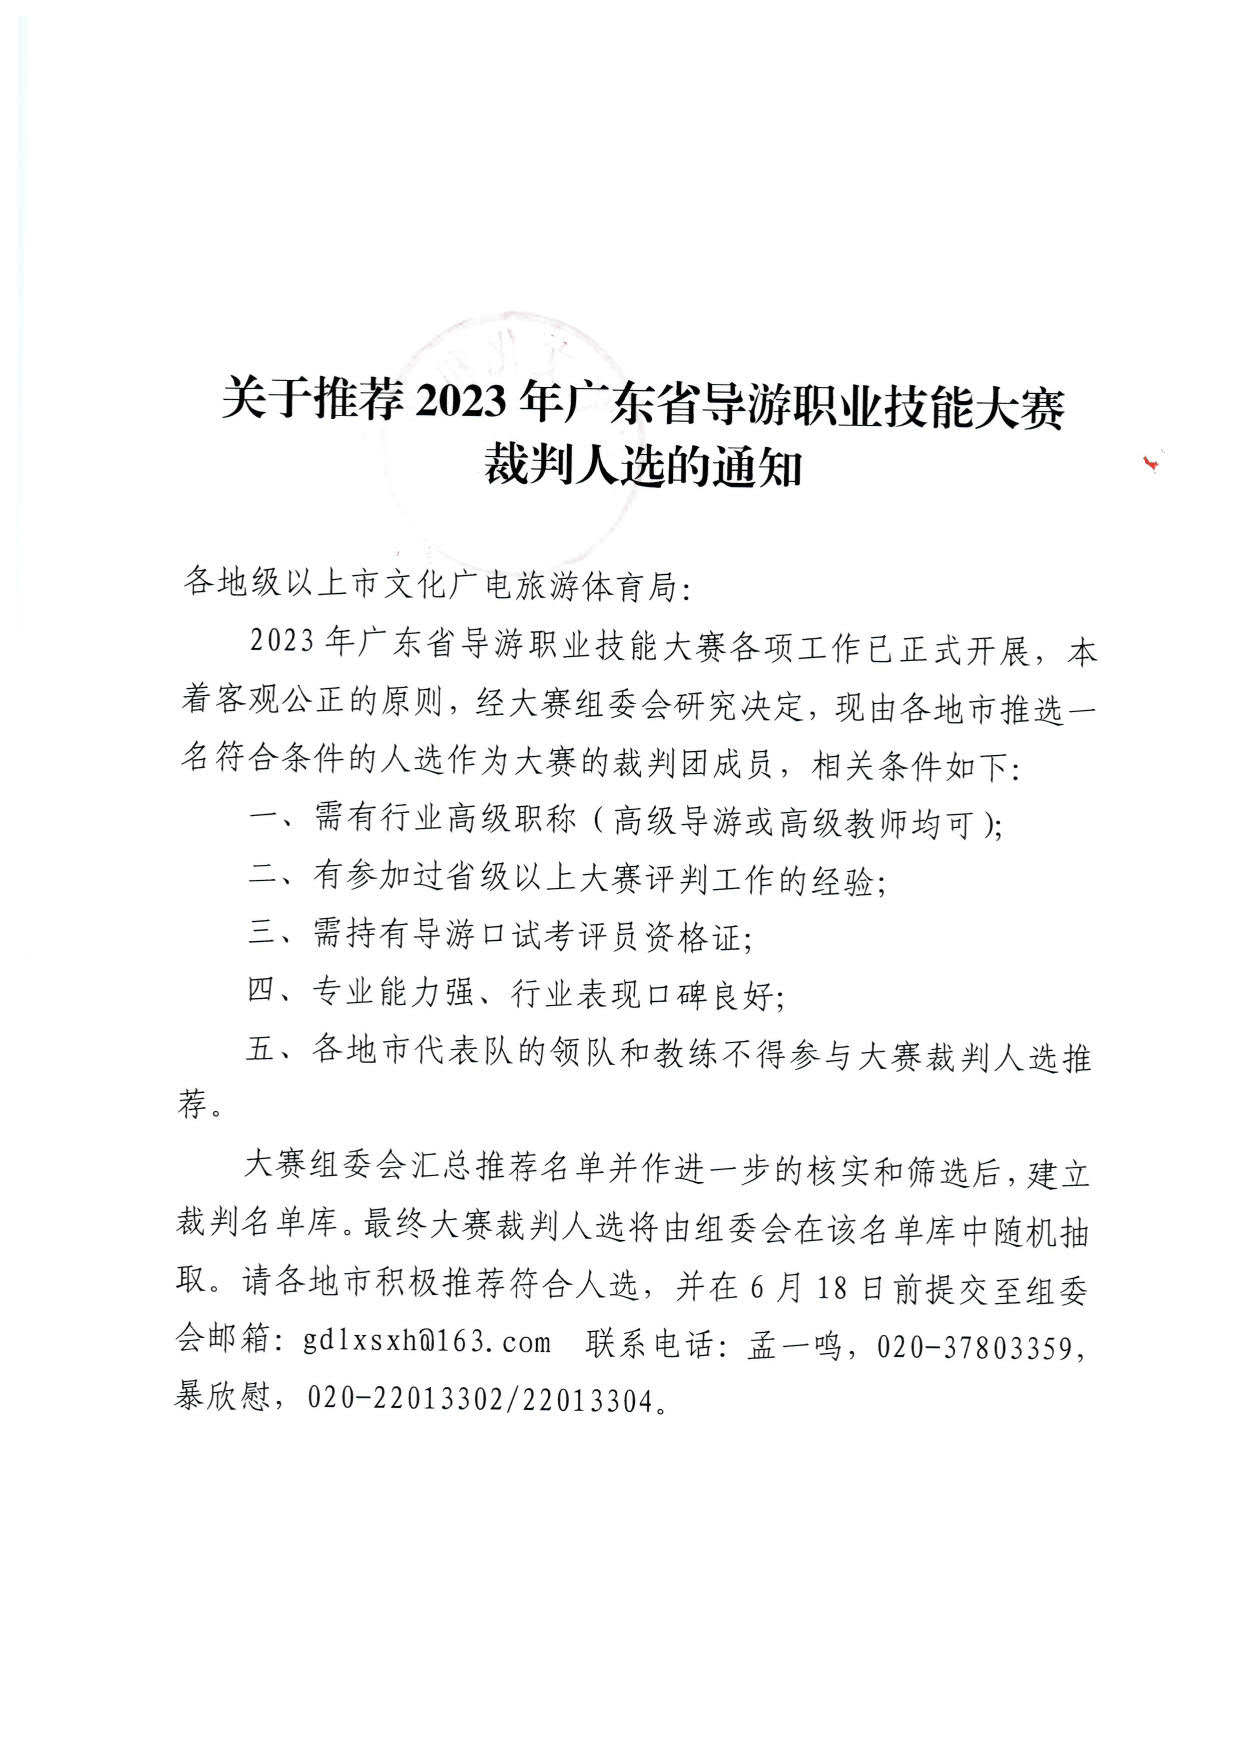 230613165620026620_关于推荐2023年广东省导游职业技能大赛裁判人选的通知_1.jpg